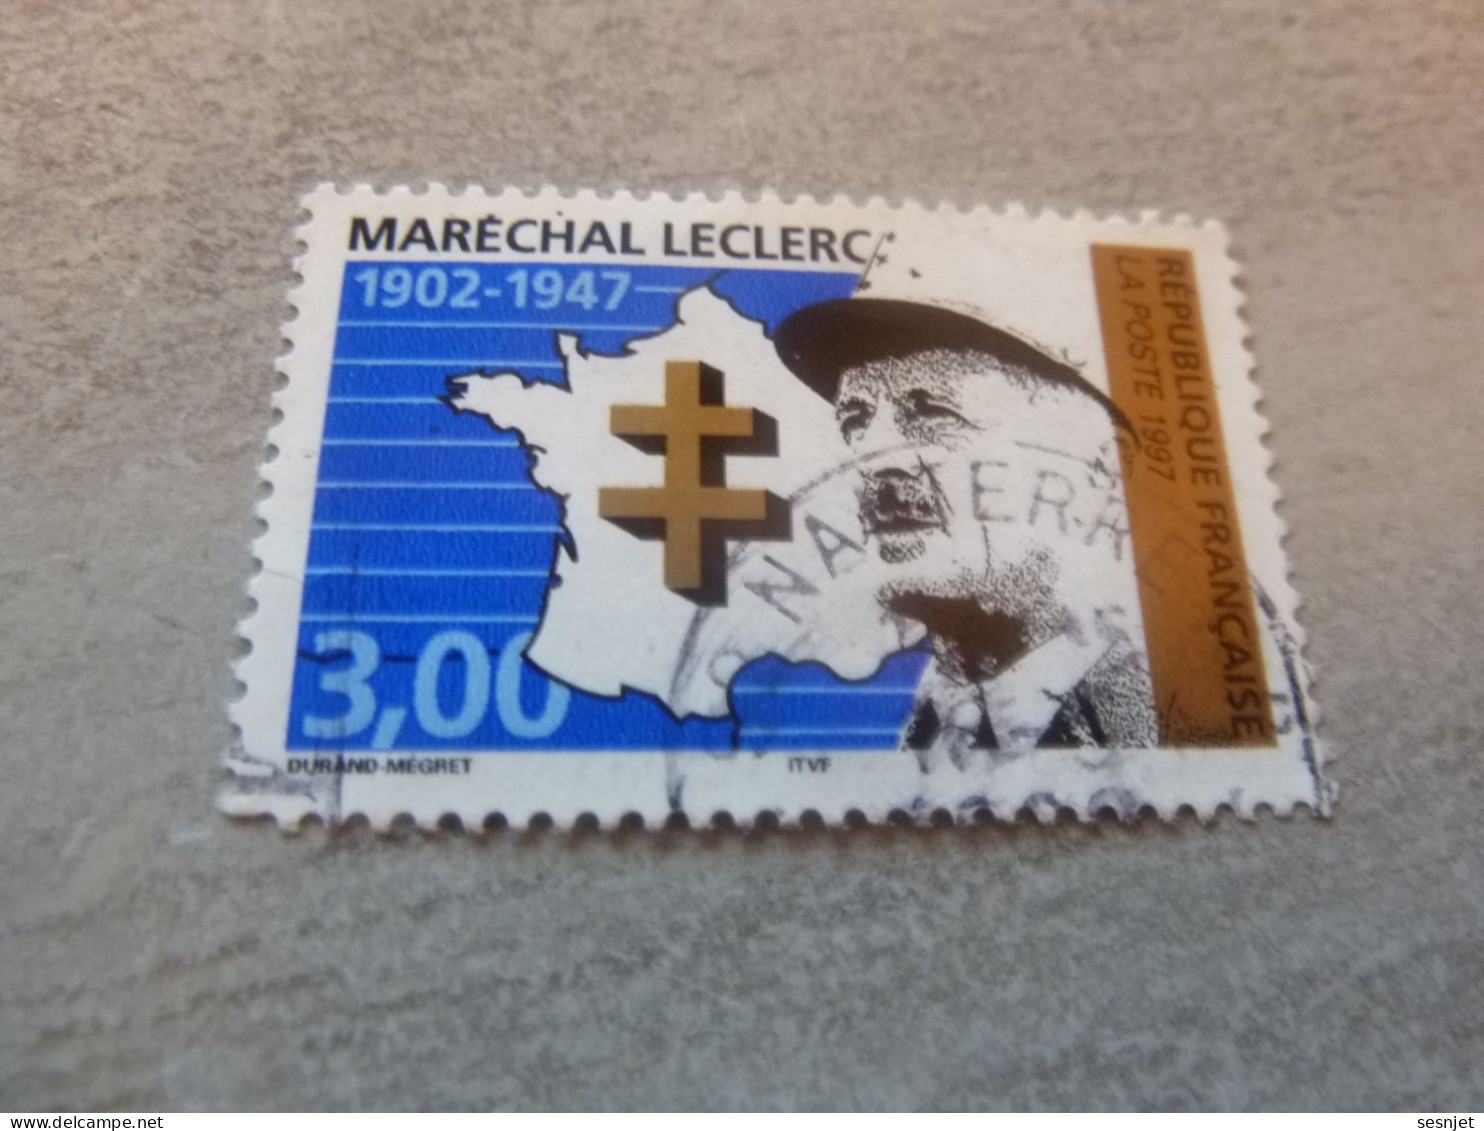 Général Leclerc (1902-1947) Maréchal - 3f. - Yt 3126 - Vert, Noir Et Bleu - Oblitéré - Année 1997 - - Gebraucht